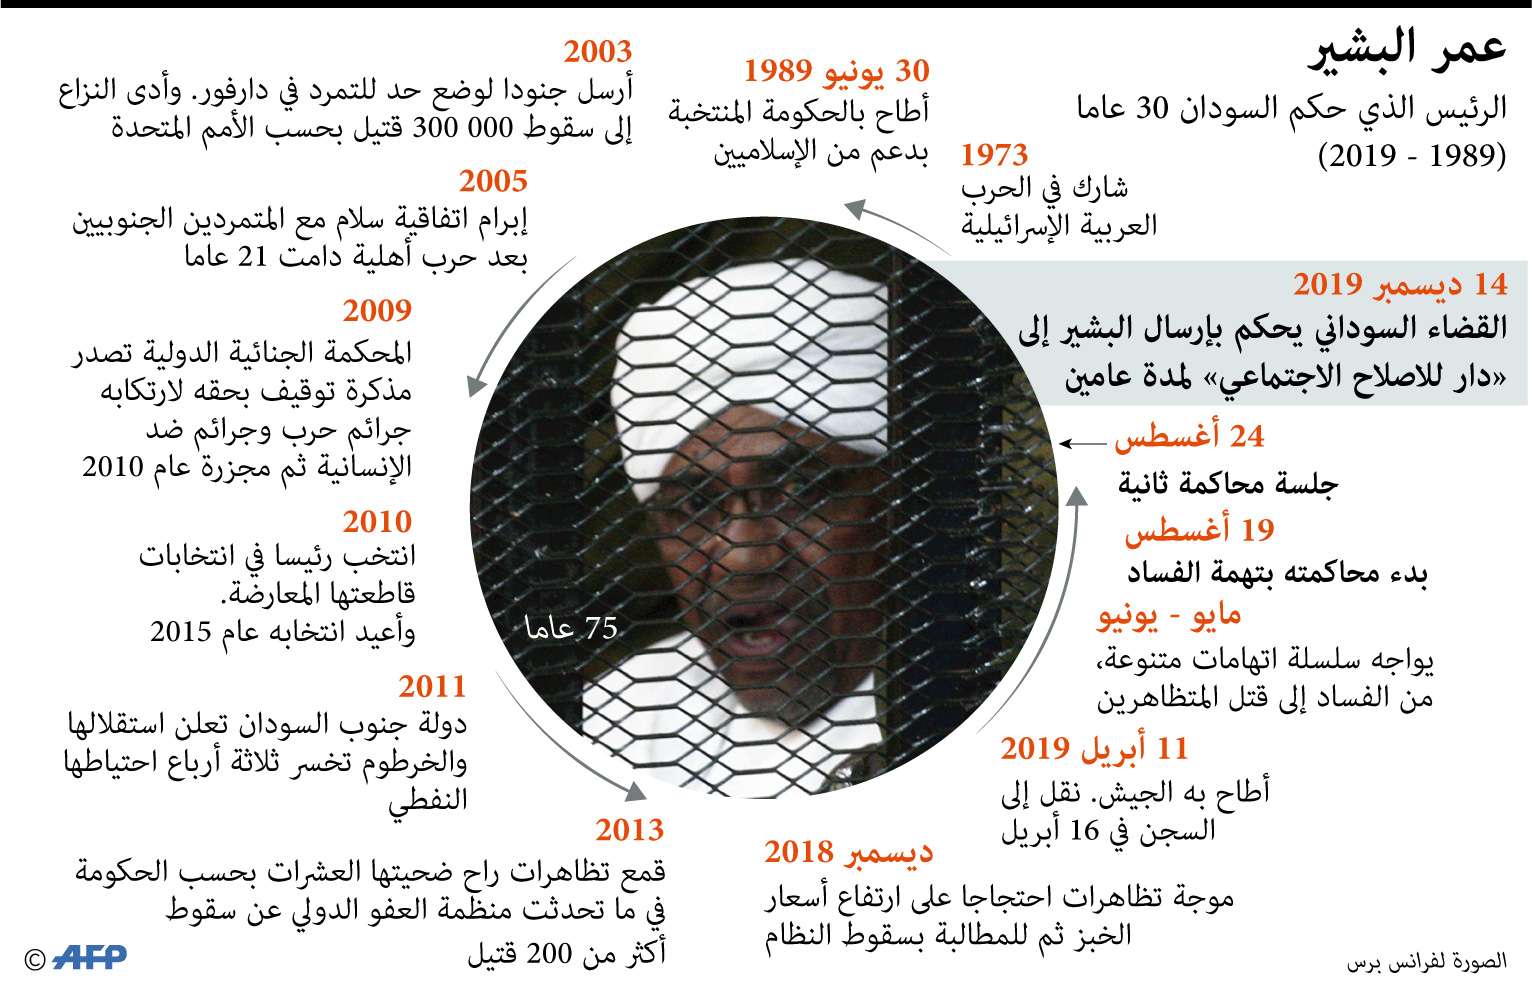 الرئيس السوداني المعزول